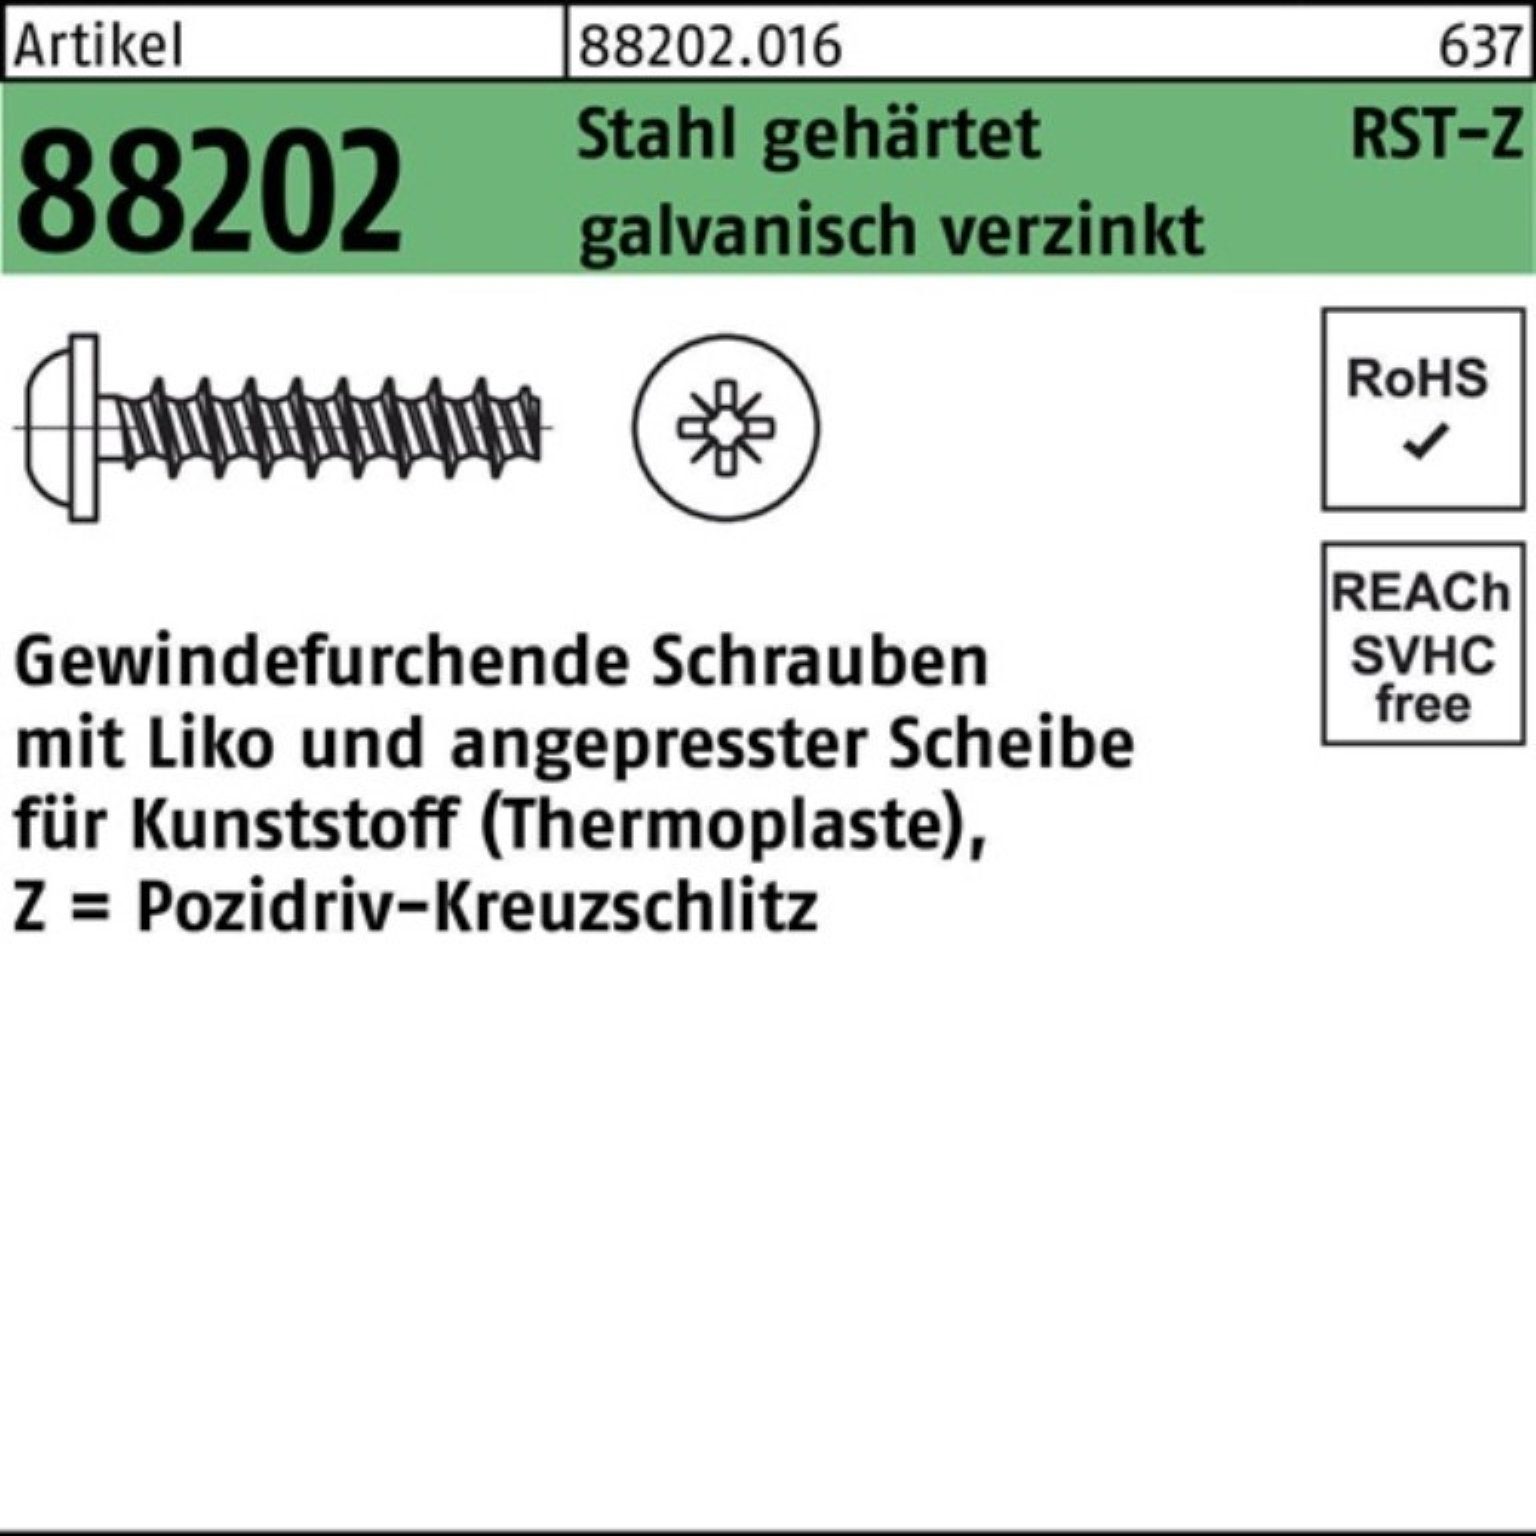 6x20-Z Gewindeschraube Reyher Liko PZ 88202 250er Gewindefurchendeschraube Pack R Stahl gehä